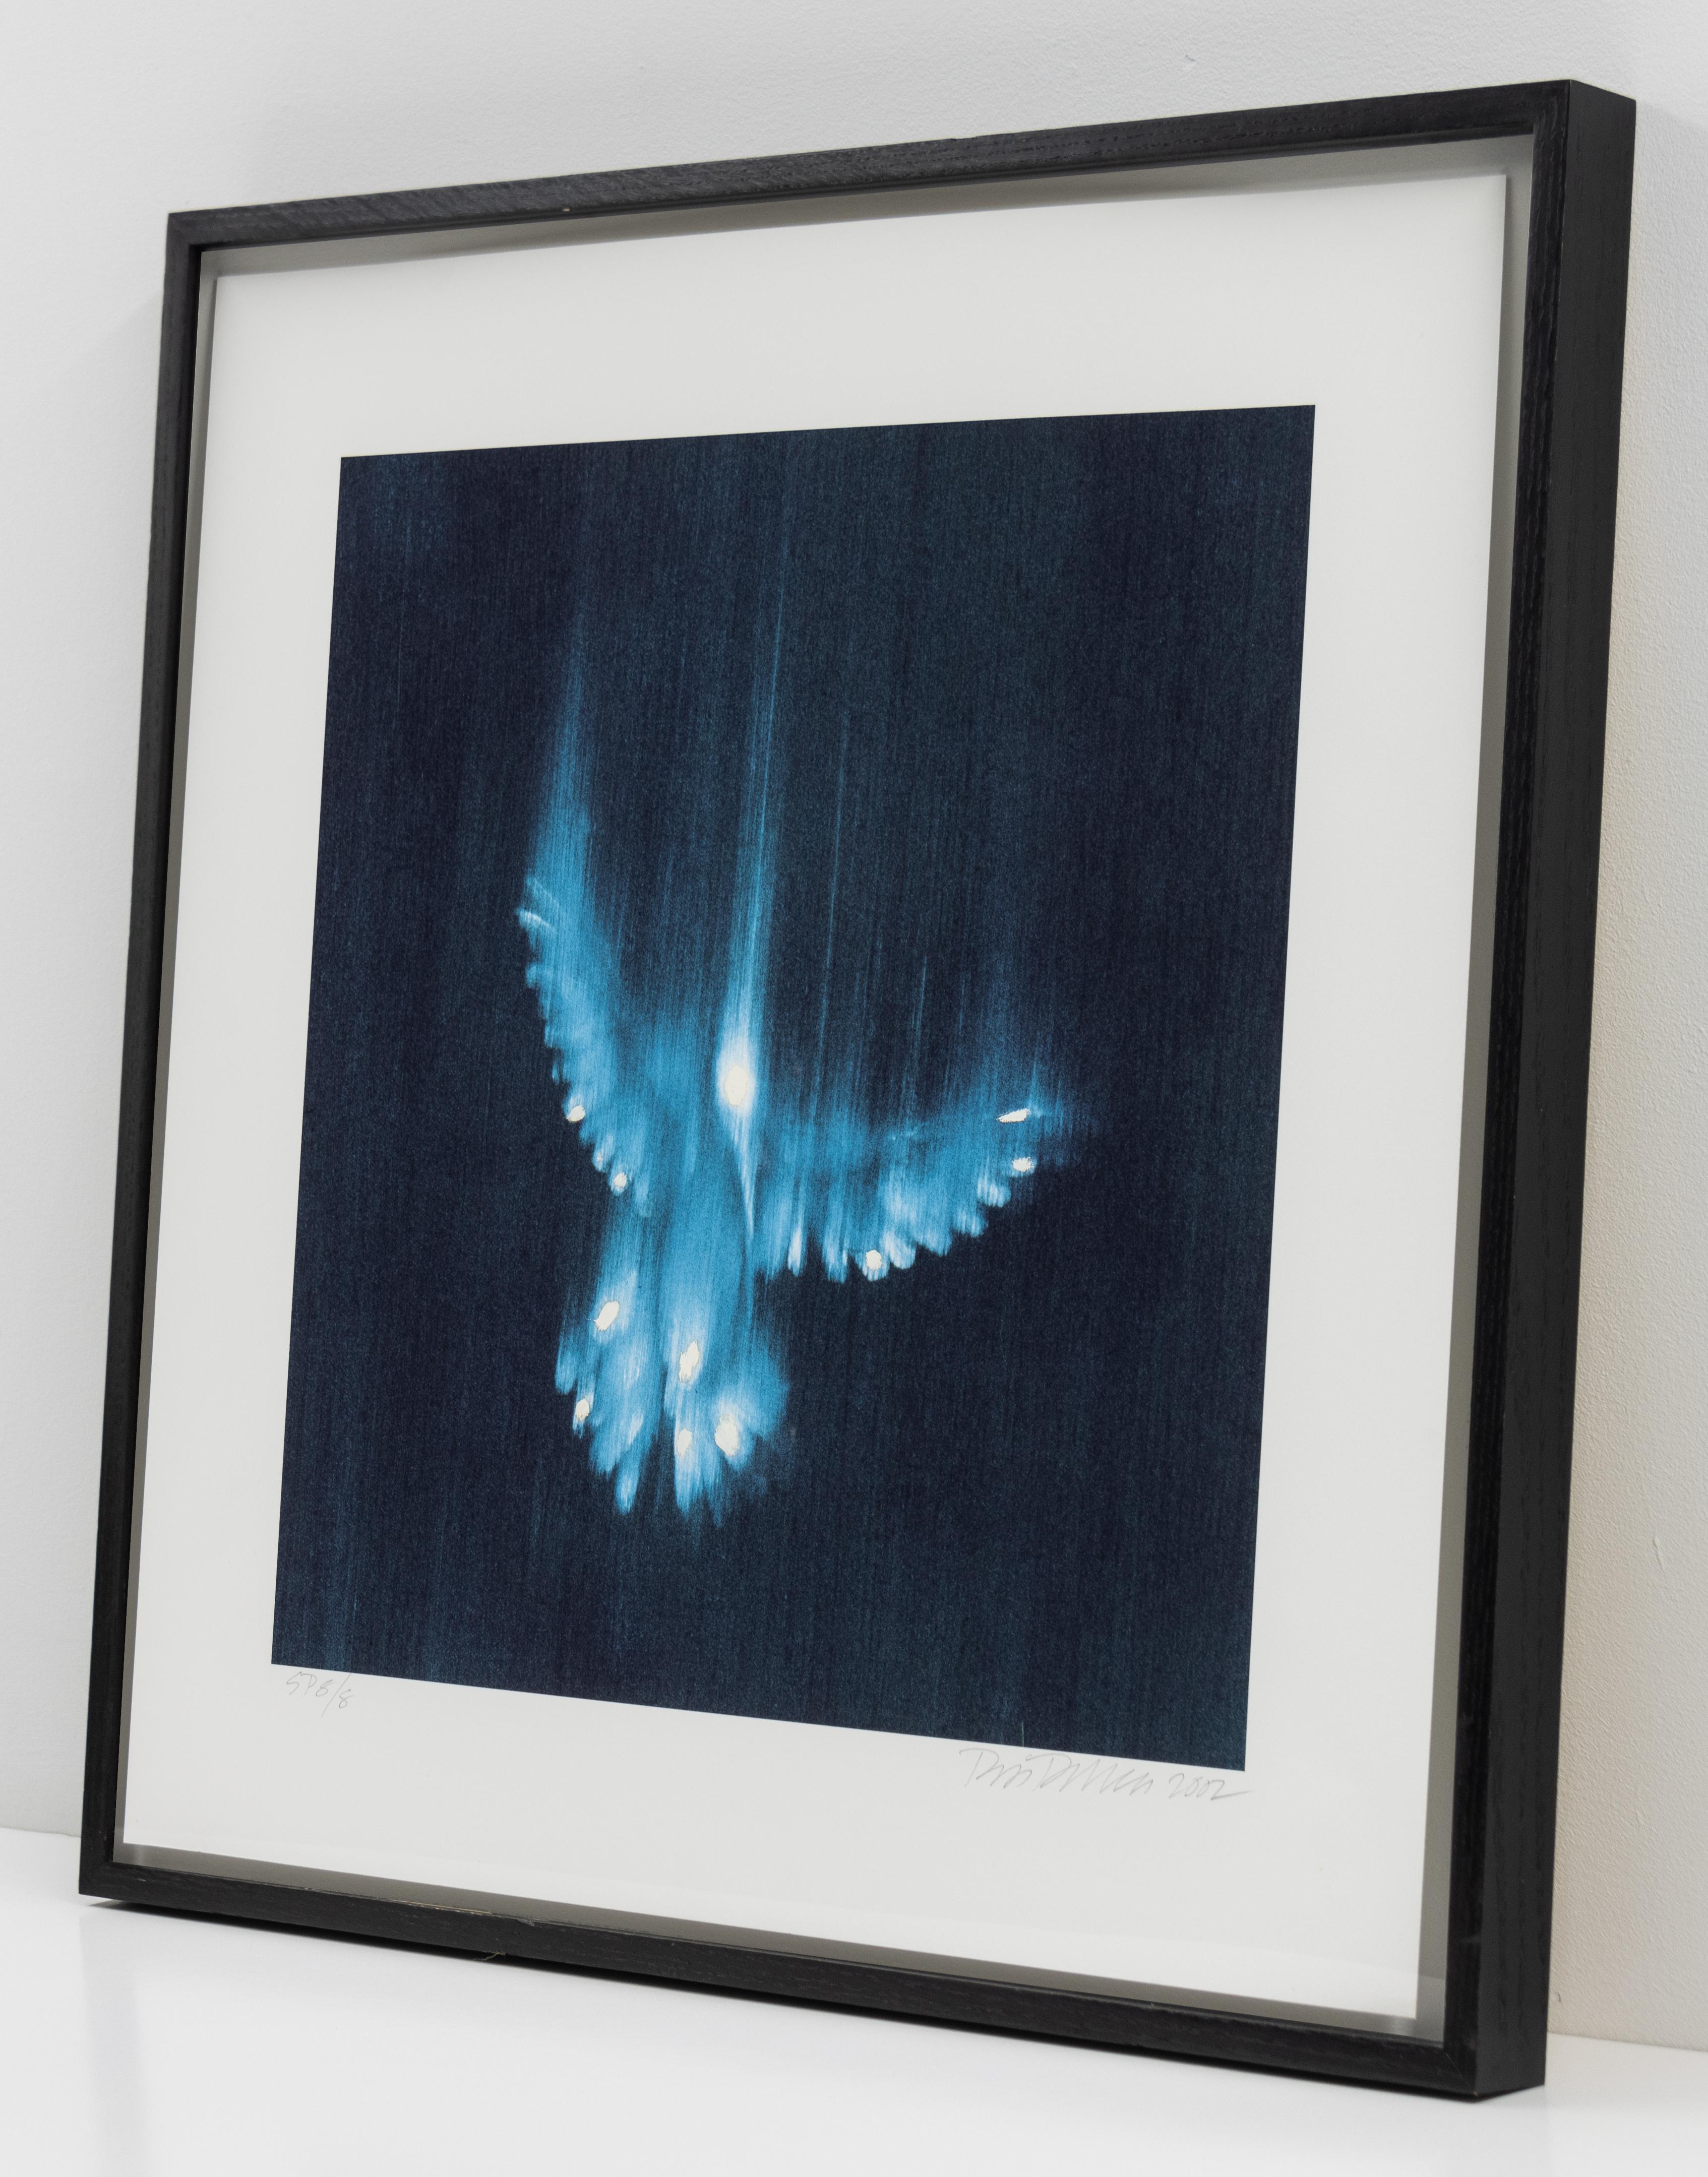 Dies ist ein handgemalter digitaler Tintenstrahldruck des Künstlers Ross Bleckner.

Die Arbeit zeigt das verschwommene Bild eines fallenden blauen Vogels.

